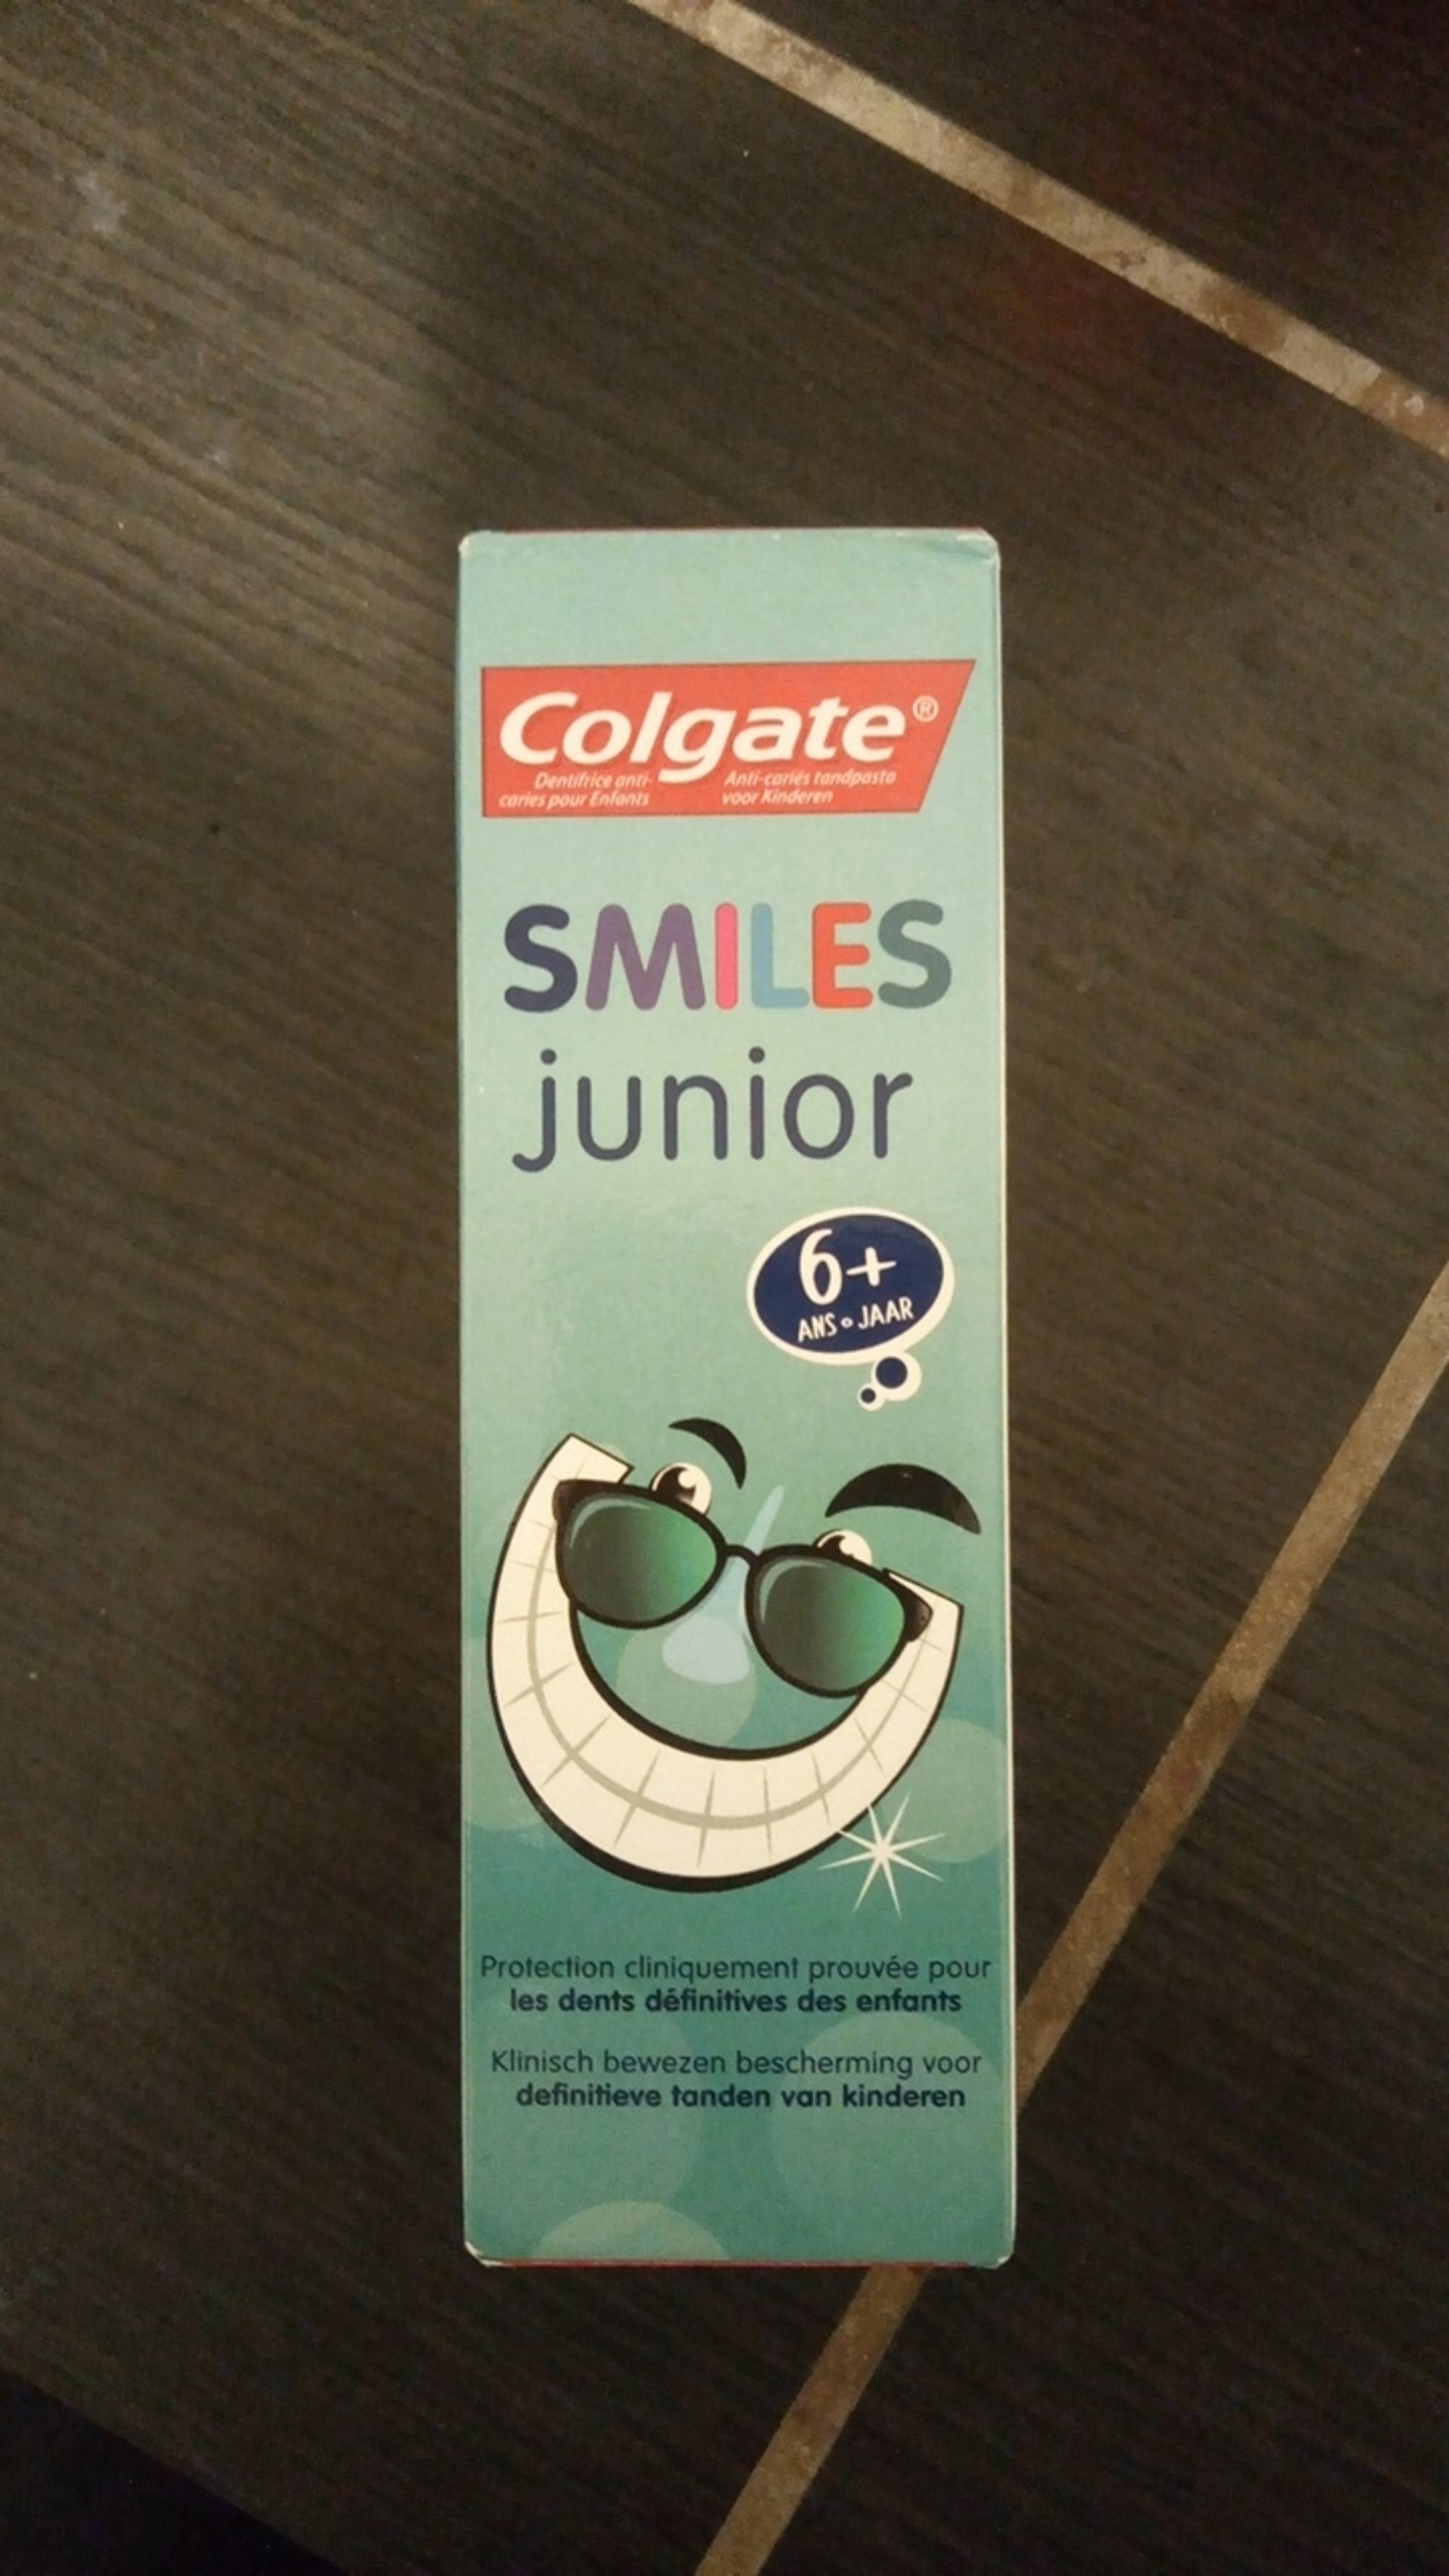 COLGATE - Smiles junior - Dentifrice anti-caries pour Enfants 